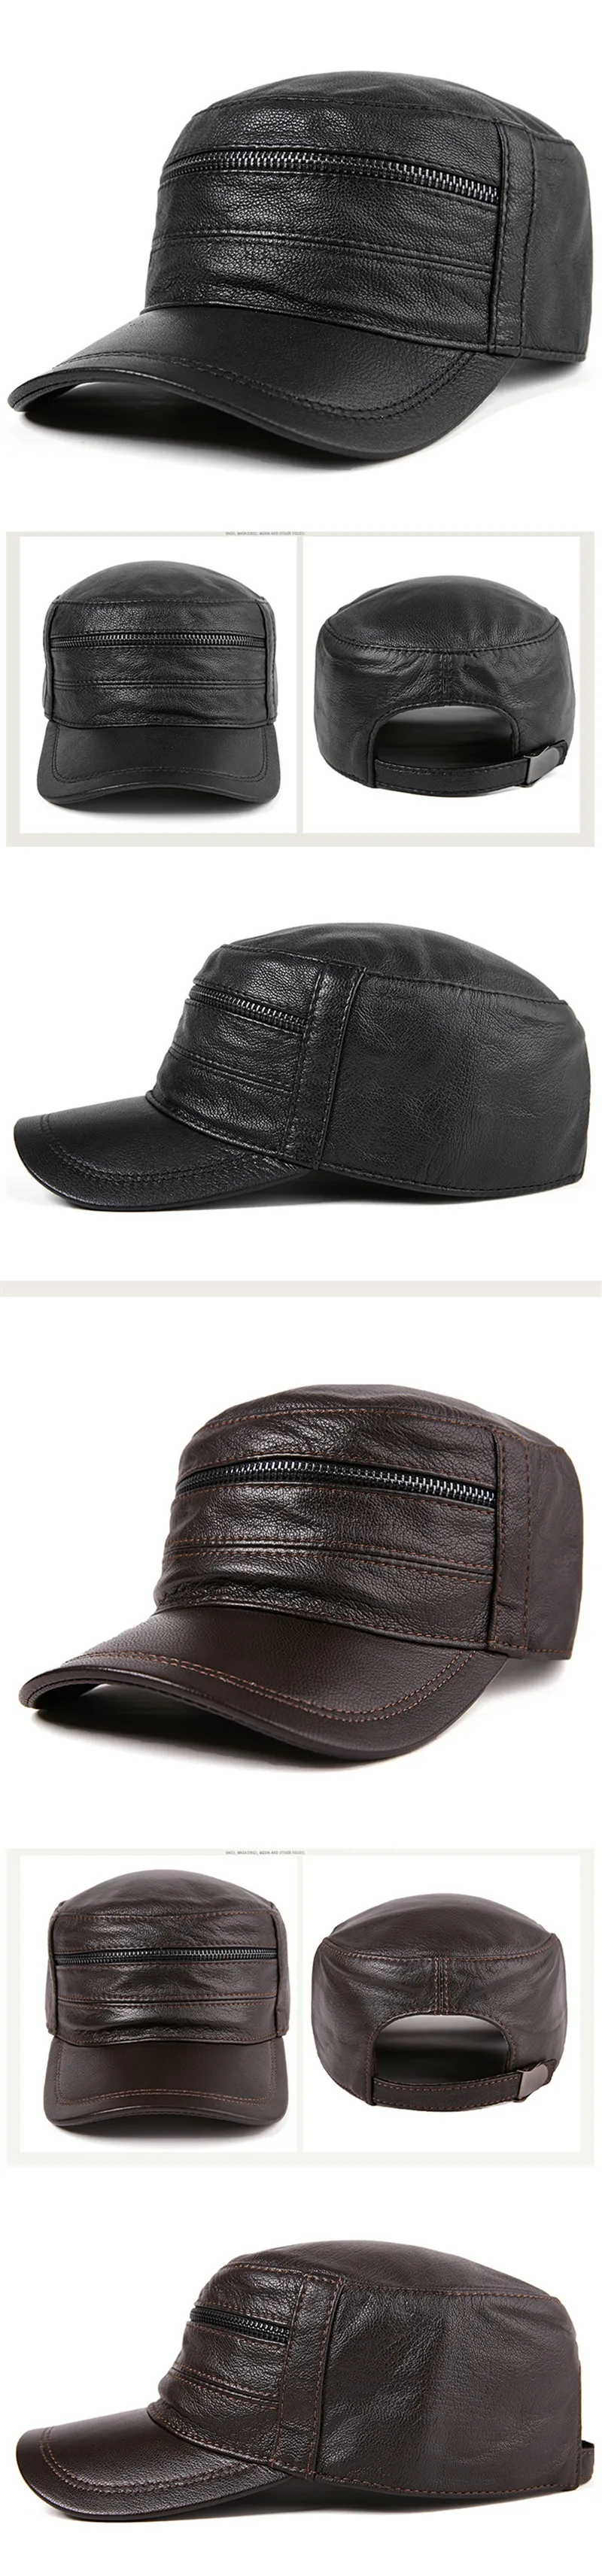 SILOQIN регулируемый размер шляпа из натуральной кожи Snapback тренд для мужчин, осень, зима модный первый слой из овечей кожи бейсболки бренды